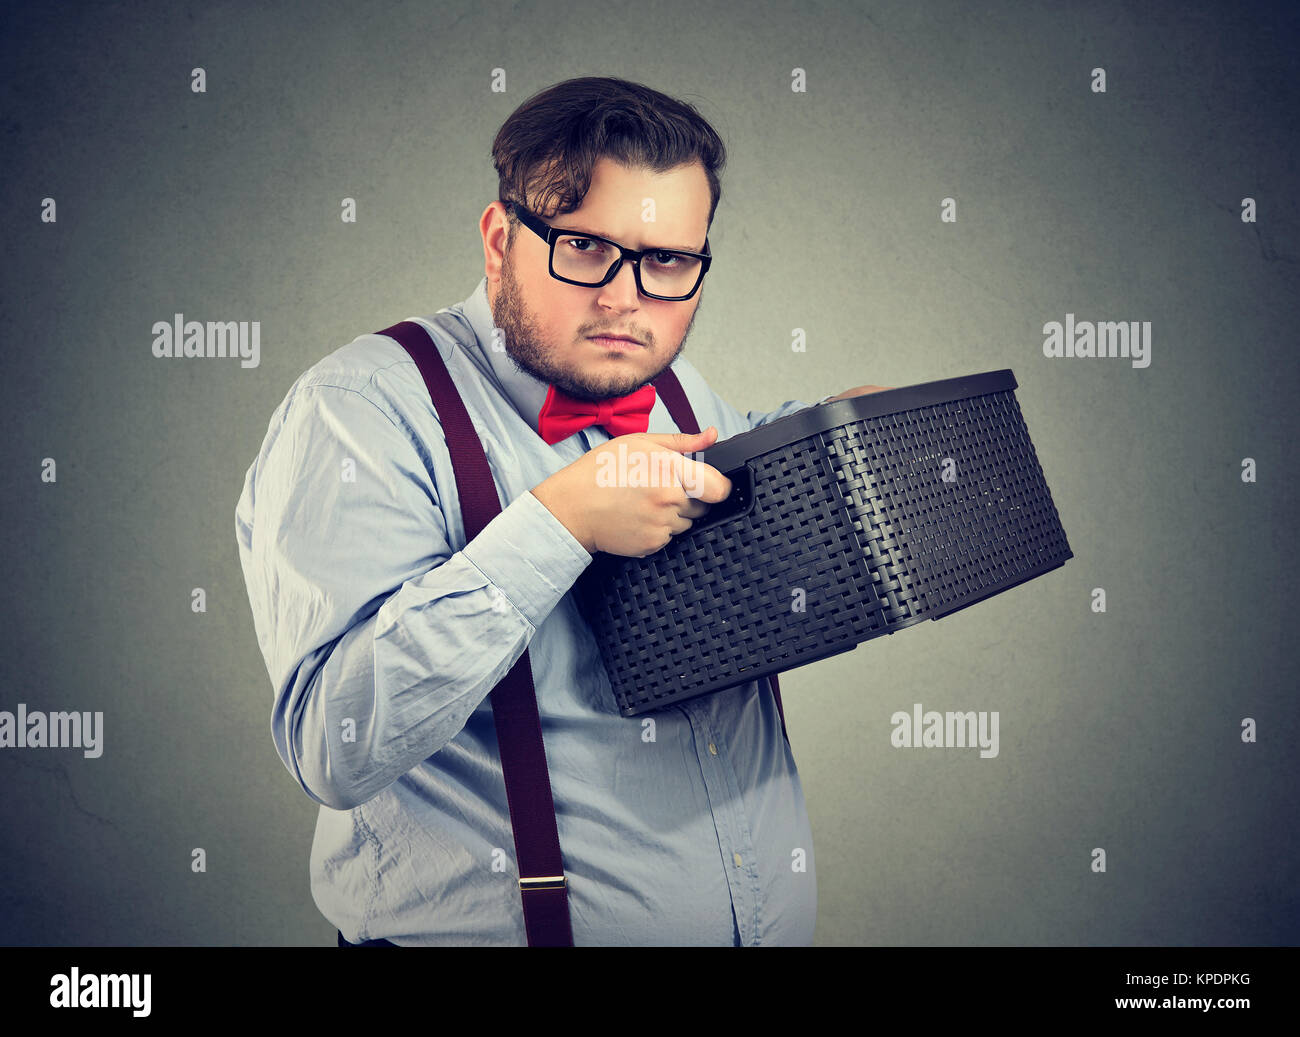 Ungesellig mann Holding Box und Suchen nicht bereit zu teilen, während auf Grau posieren. Stockfoto